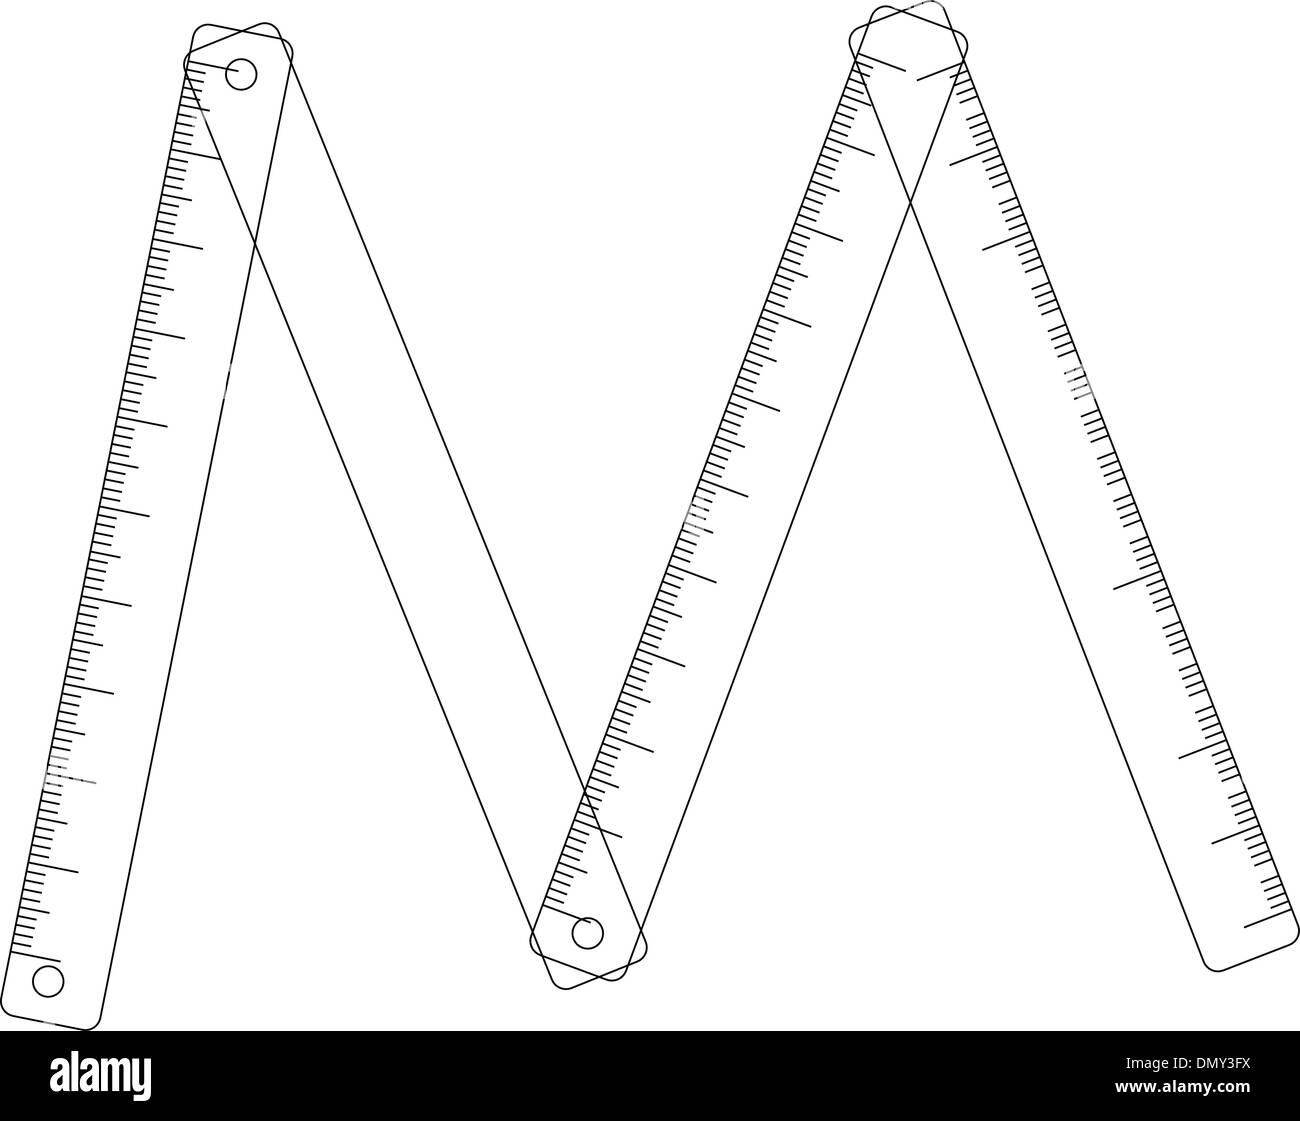 Folding ruler on white background Stock Vector